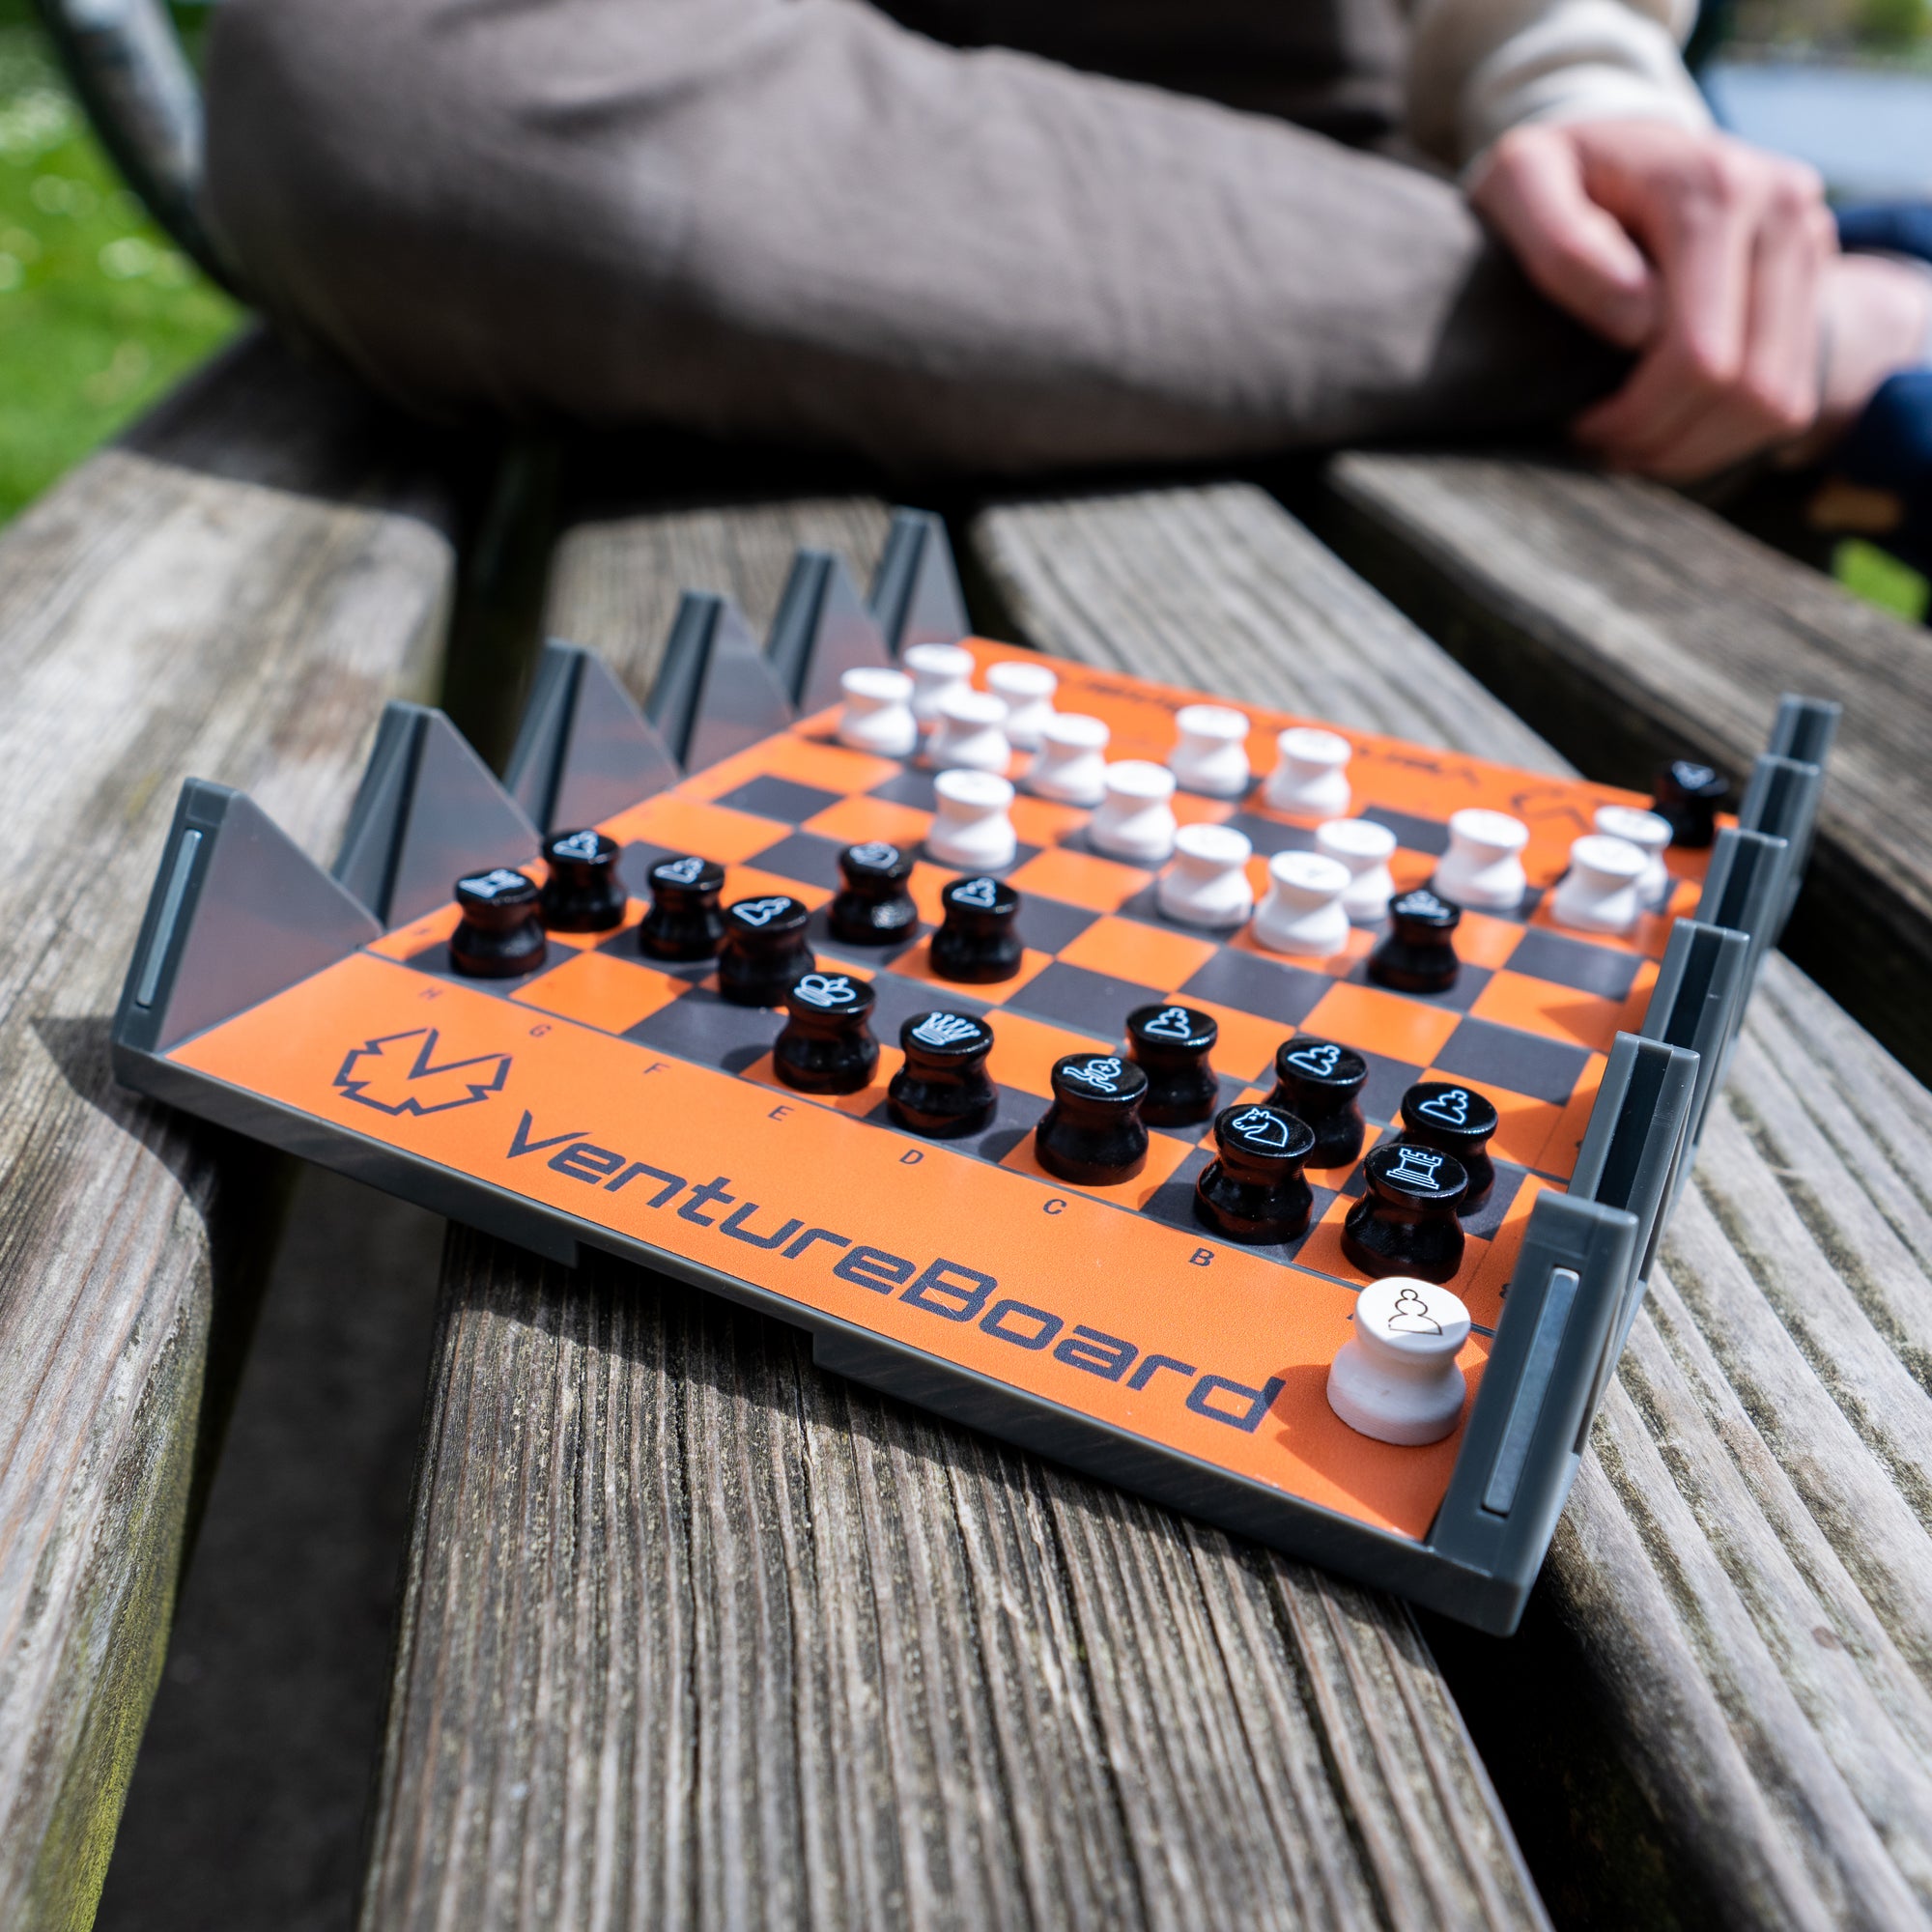  VENTUREBOARD 6 Inches Magnetic Unique Chess Set Board